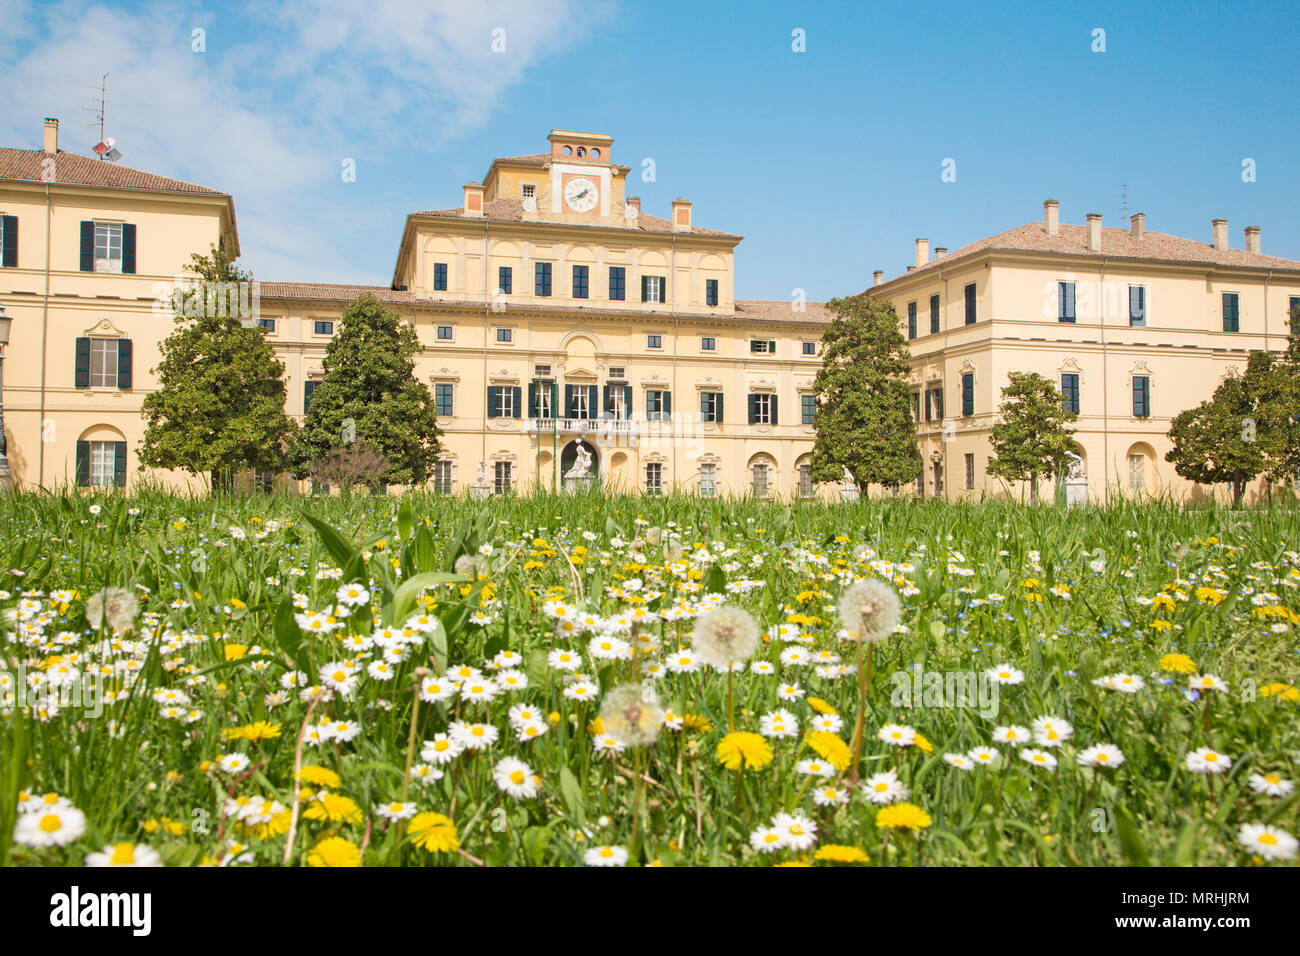 Parme, Italie - 18 avril 2018 : le palais Palazzo Ducale - Palais Ducal. Banque D'Images